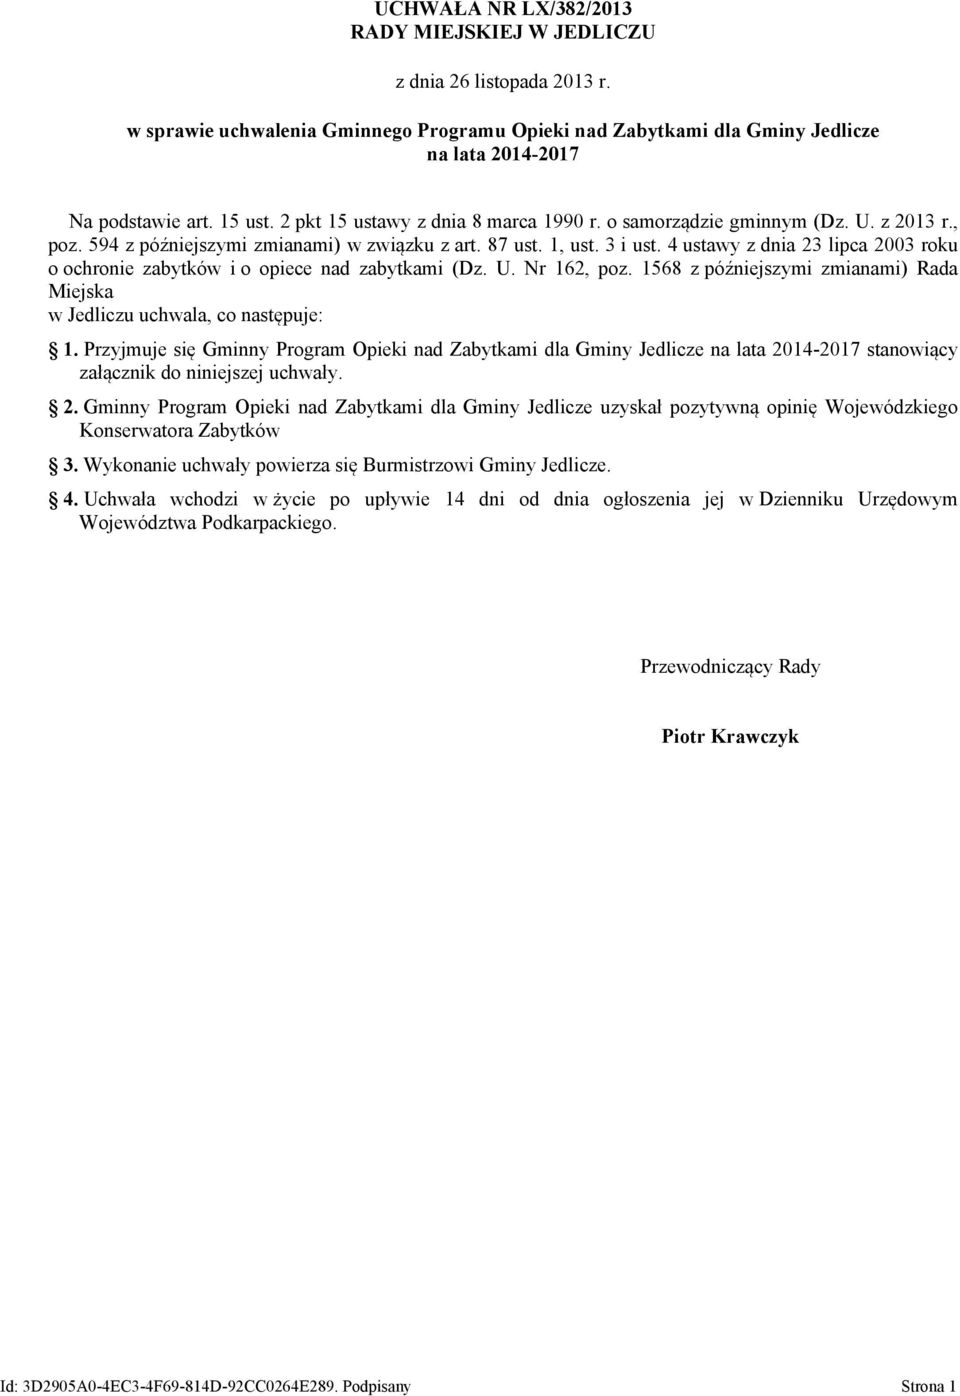 4 ustawy z dnia 23 lipca 2003 roku o ochronie zabytków i o opiece nad zabytkami (Dz. U. Nr 162, poz. 1568 z późniejszymi zmianami) Rada Miejska w Jedliczu uchwala, co następuje: 1.